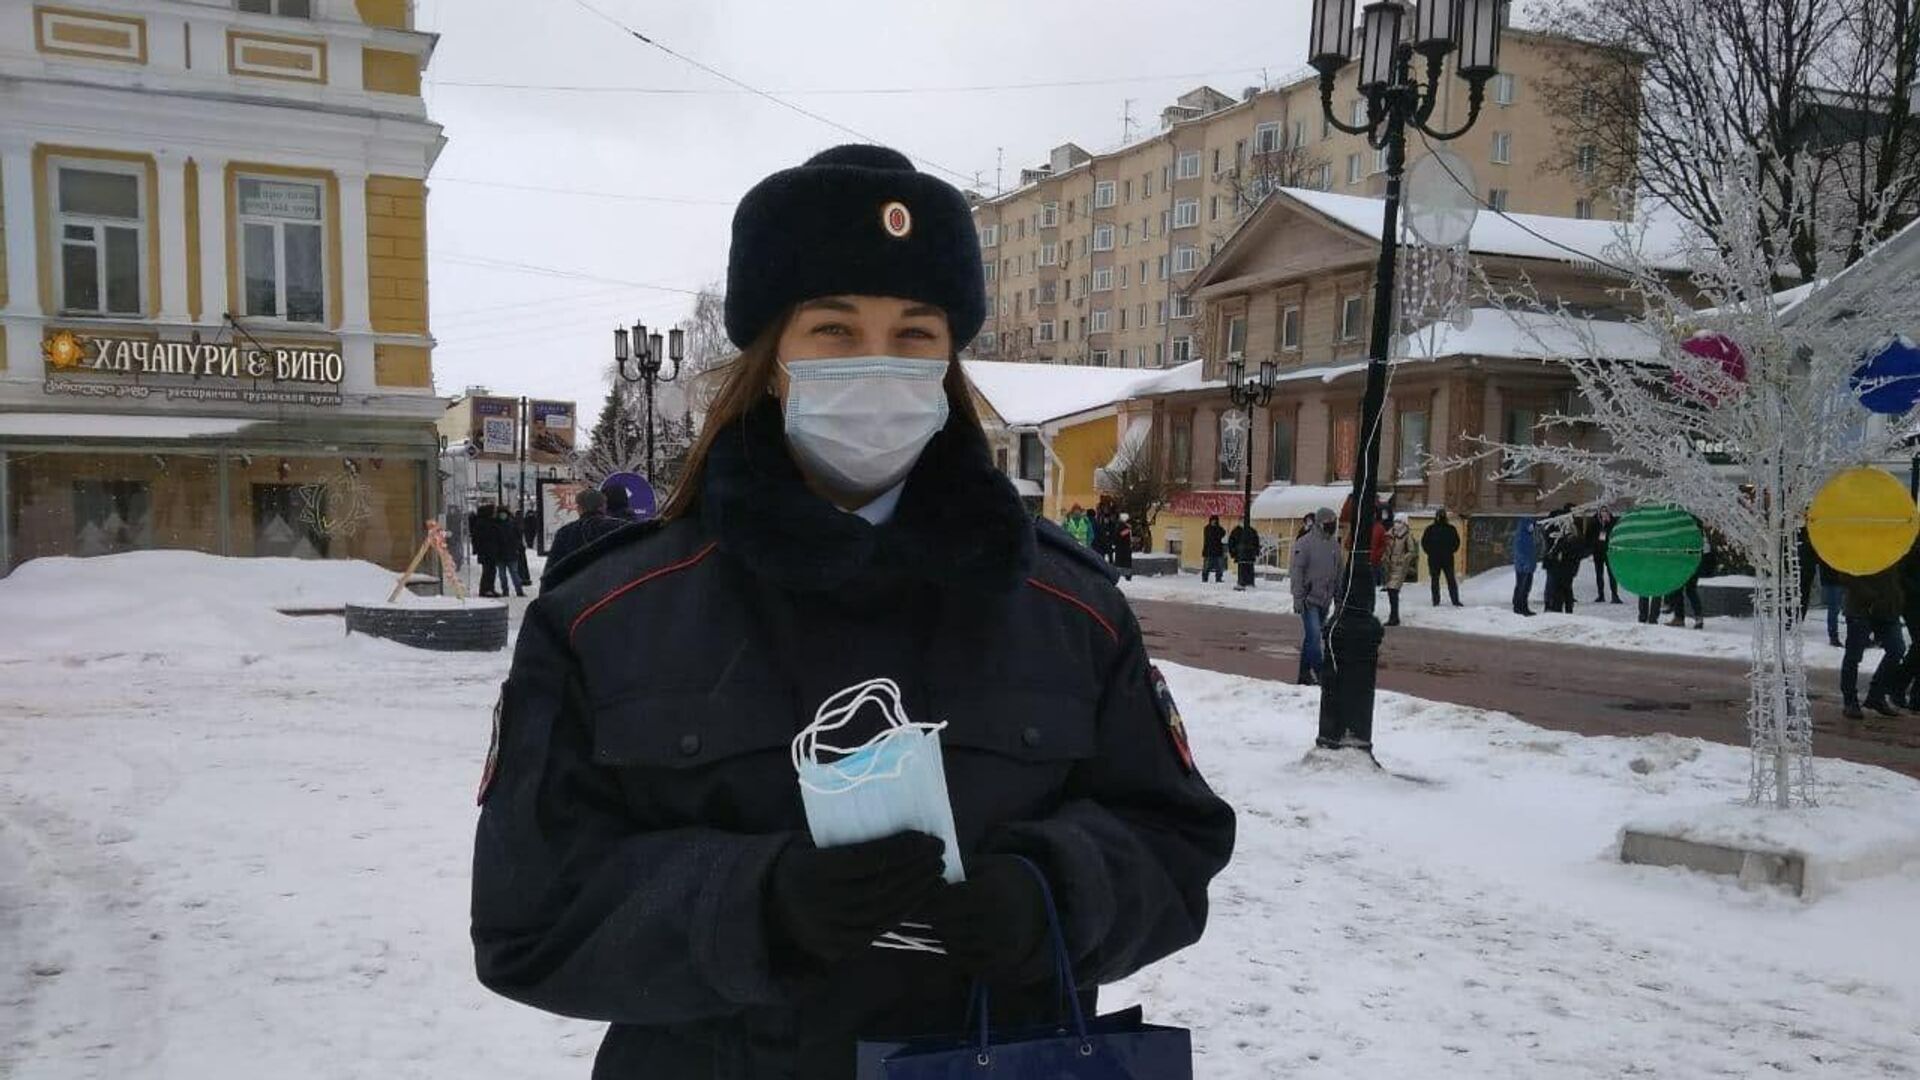 Сотрудницы полиции раздают маски пришедшим на несогласованную акцию в Нижнем Новгороде - РИА Новости, 1920, 31.01.2021